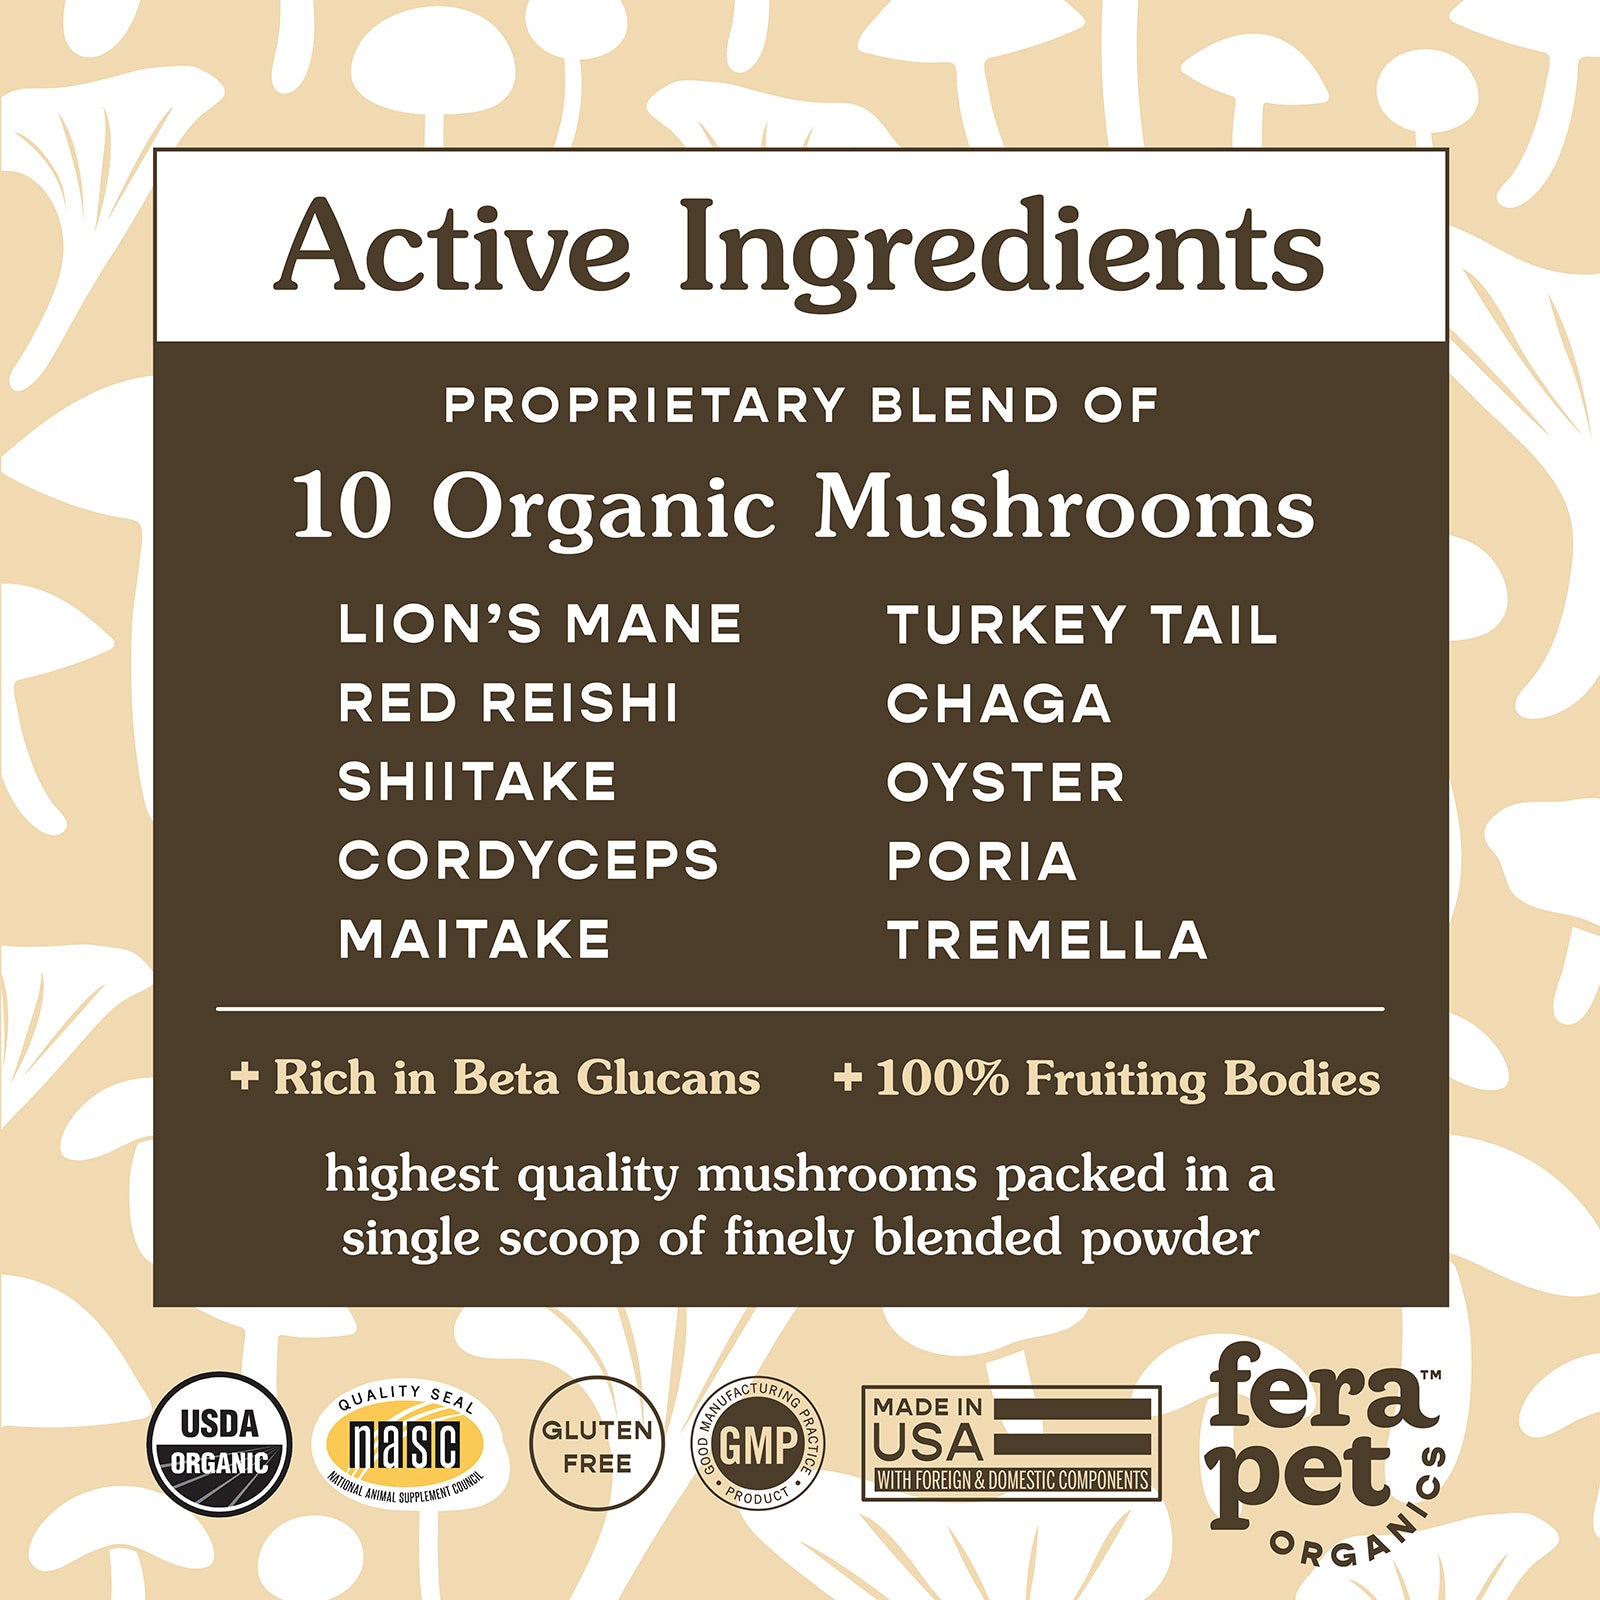 USDA Organic Mushroom Blend for Immune Support